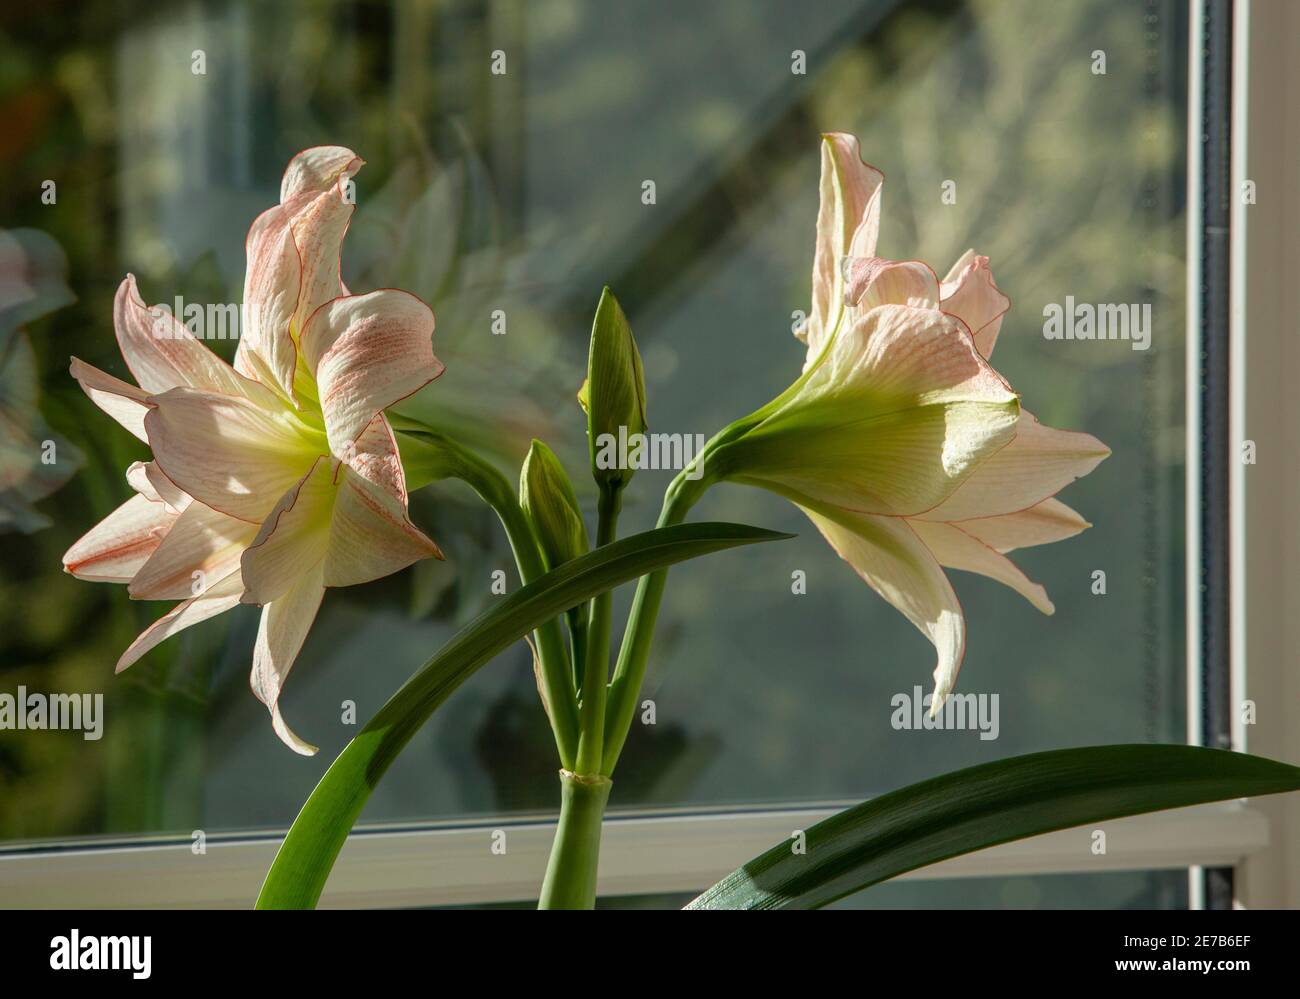 Amaryllis house plant, pot plant, growing indoors on a window ledge Stock Photo